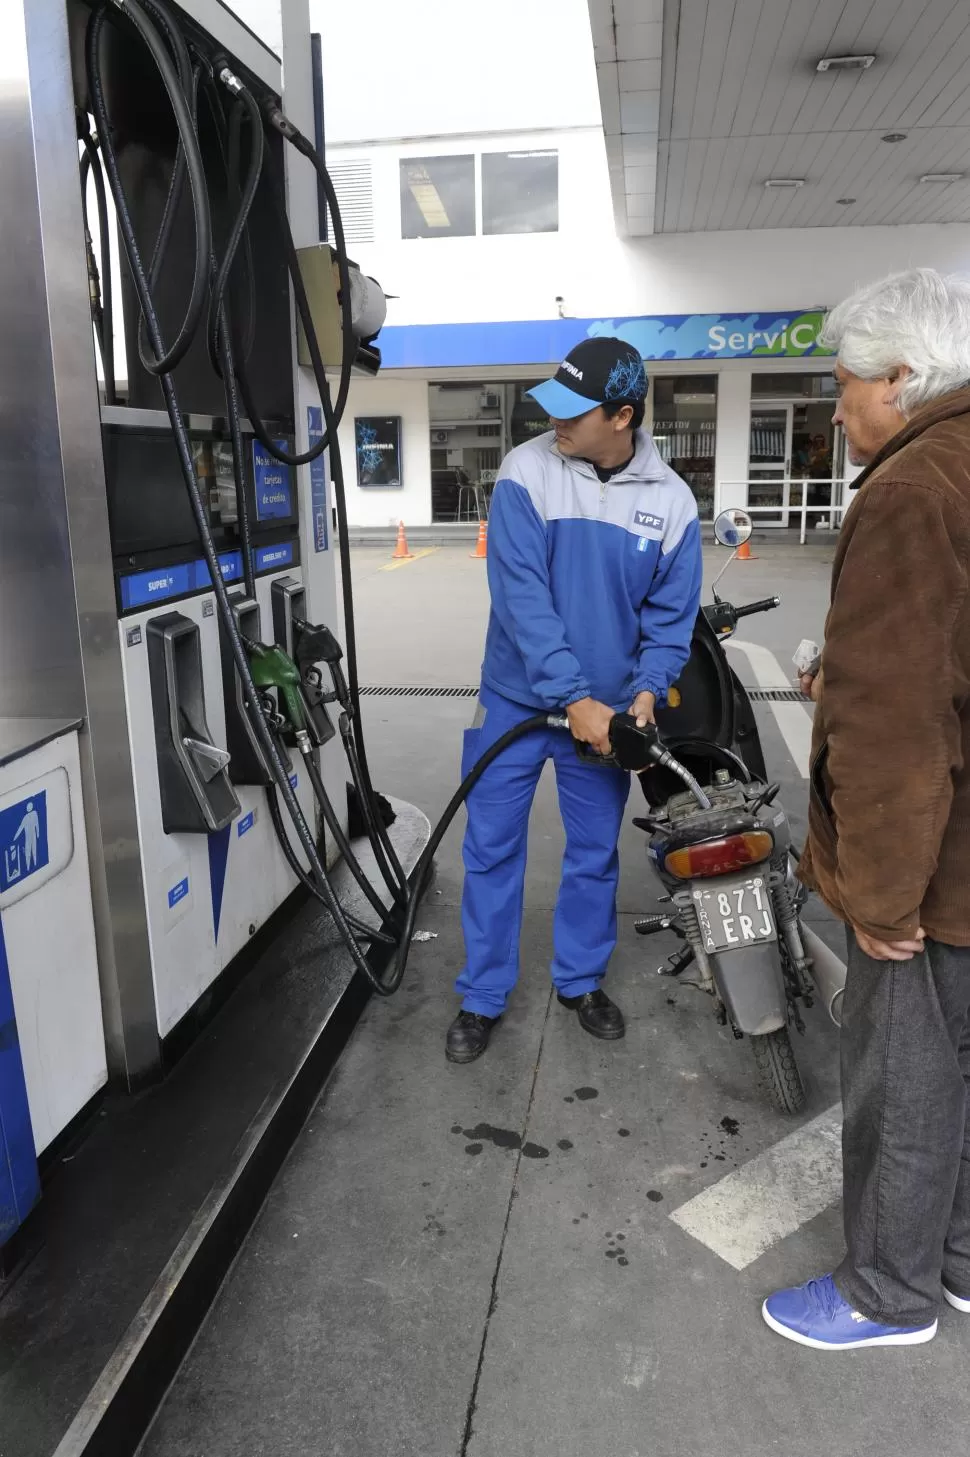 EN TODOS LOS SURTIDORES. El reajuste en el valor de las naftas se generaliza hoy al resto de las petroleras. la gaceta / foto de Florencia Zurita